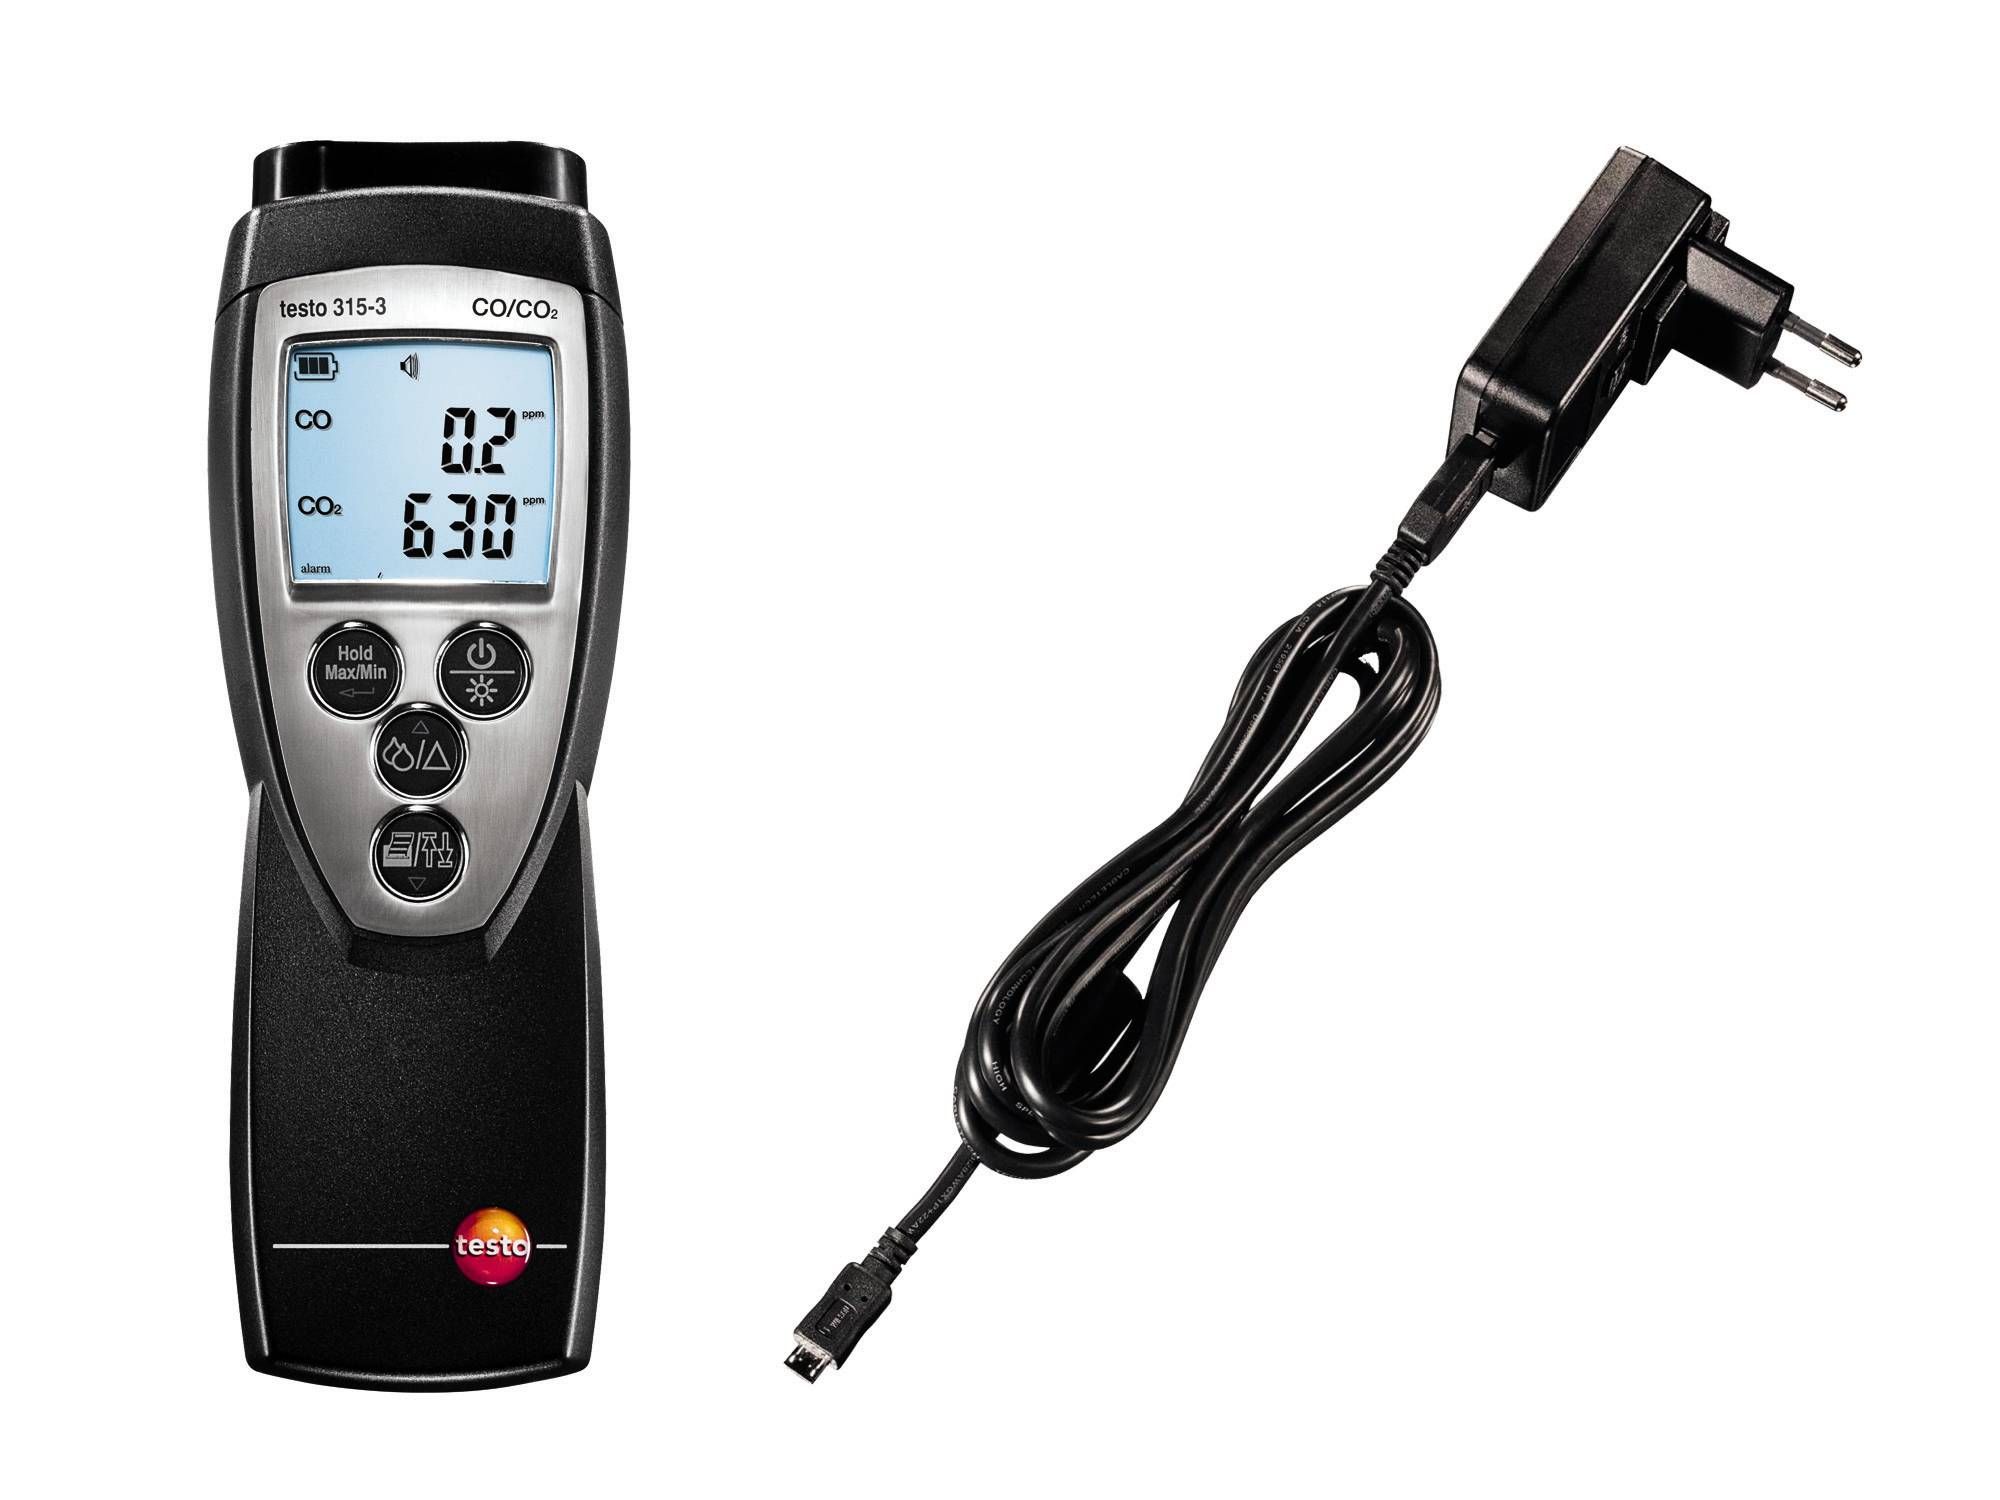 testo 315-3 ohne Bluetooth - CO/CO2-Messgerät für Umgebungsmessungen